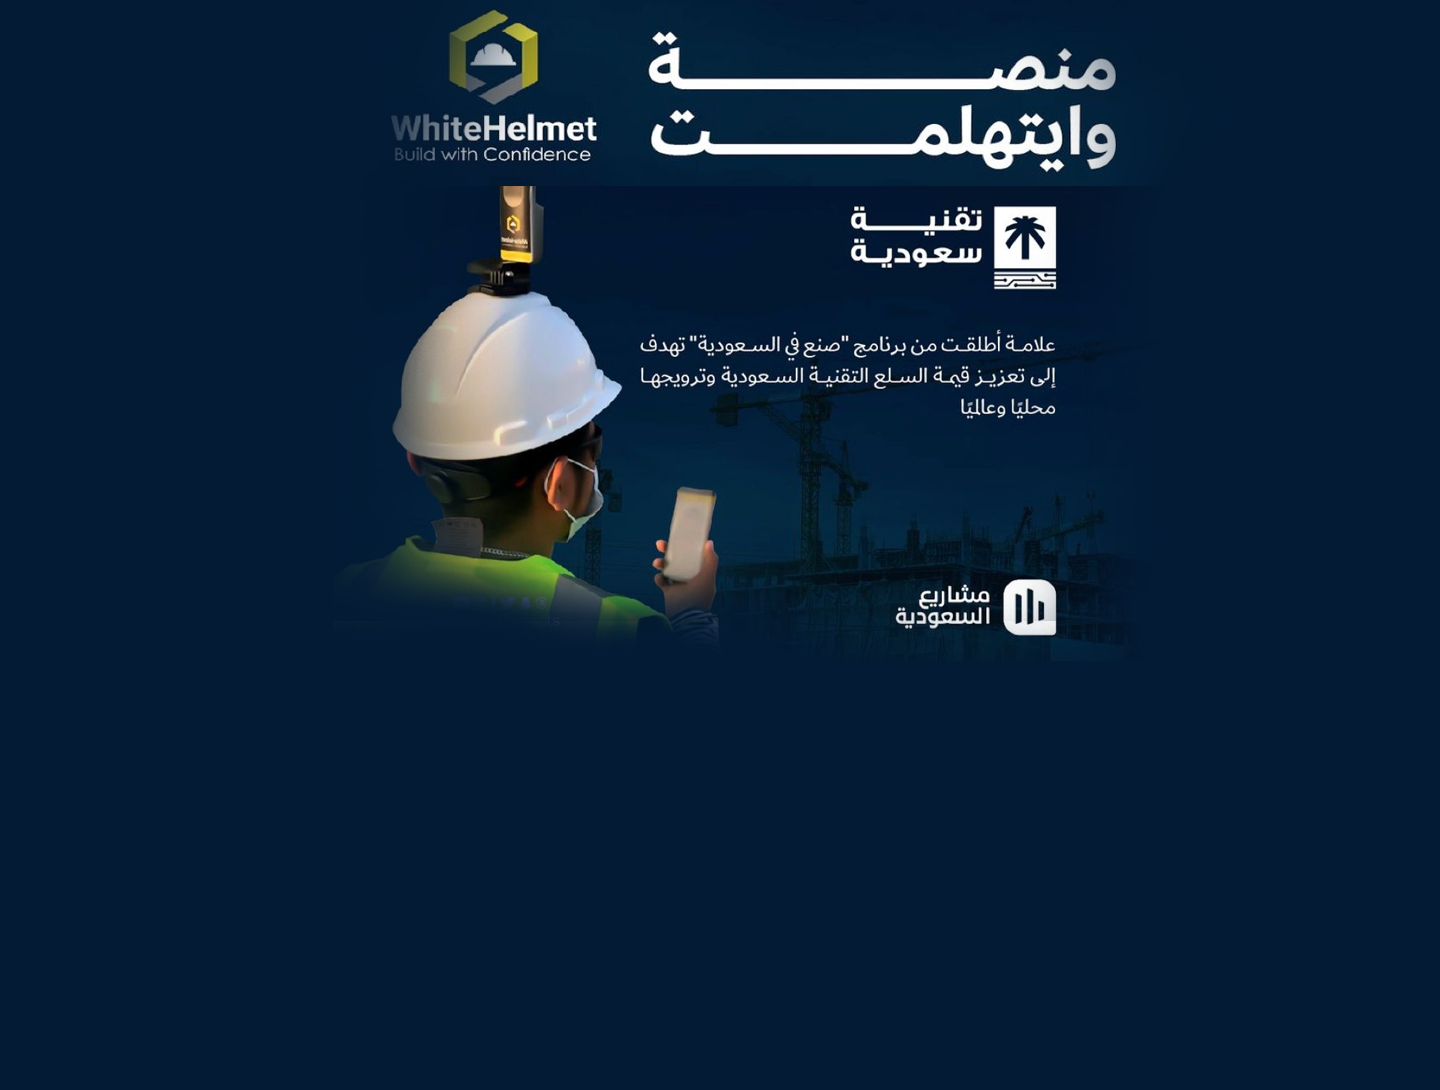  WhiteHelmet هي أول منصة في قطاع البناء والتشييد تحصل على علامة "تقنية سعودية"